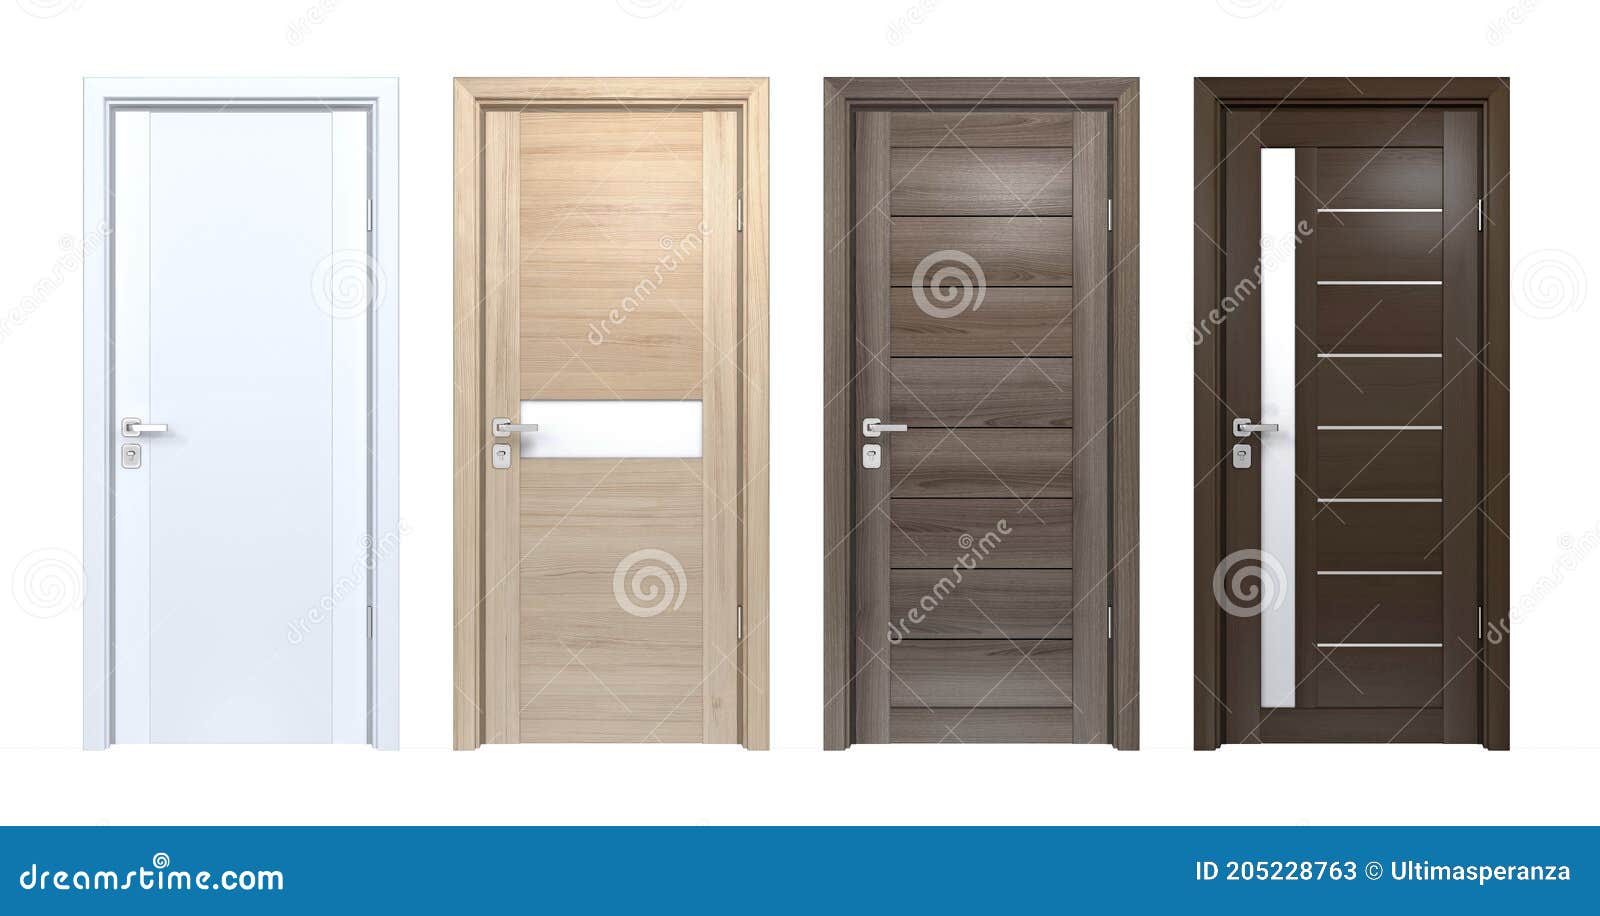 Modern Design Set of High Resolution Wooden Texture House Doors ...